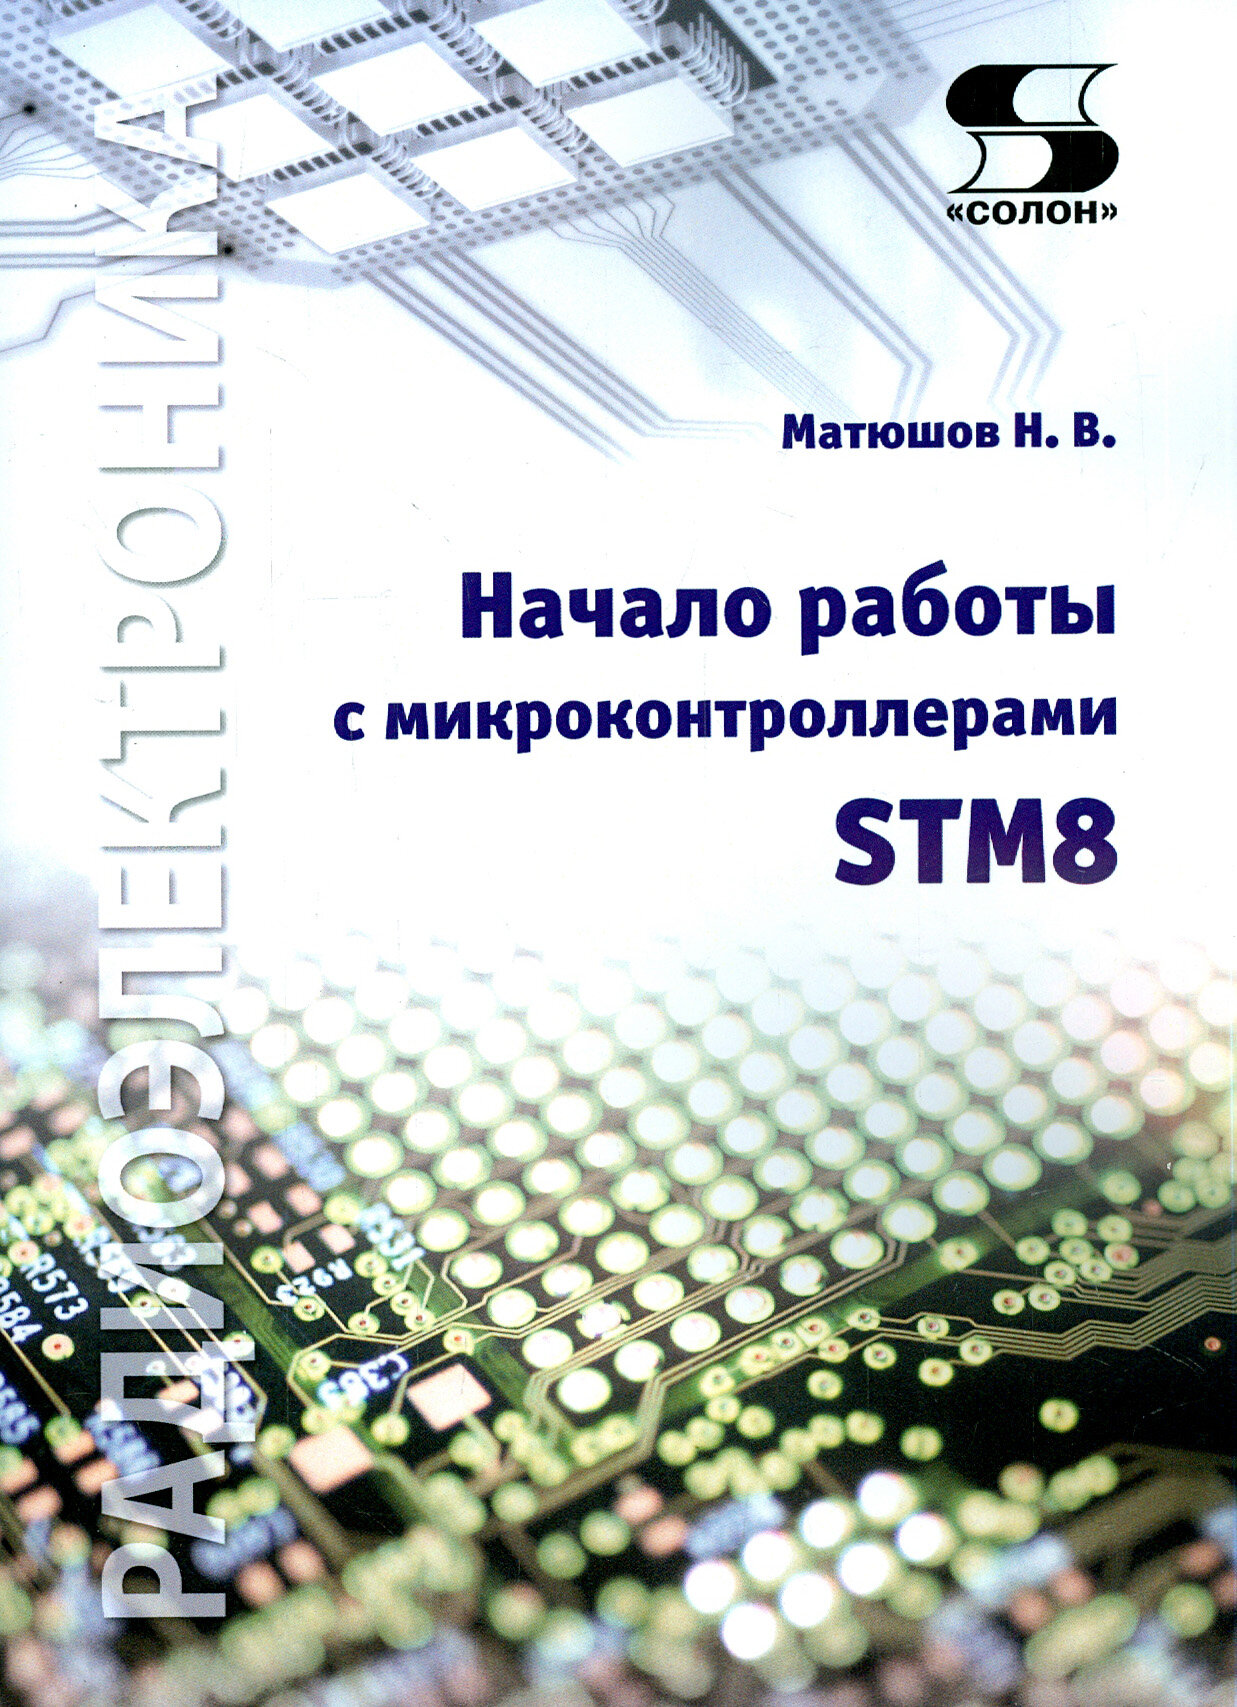 Начало работы с микроконтроллерами STM8 - фото №2